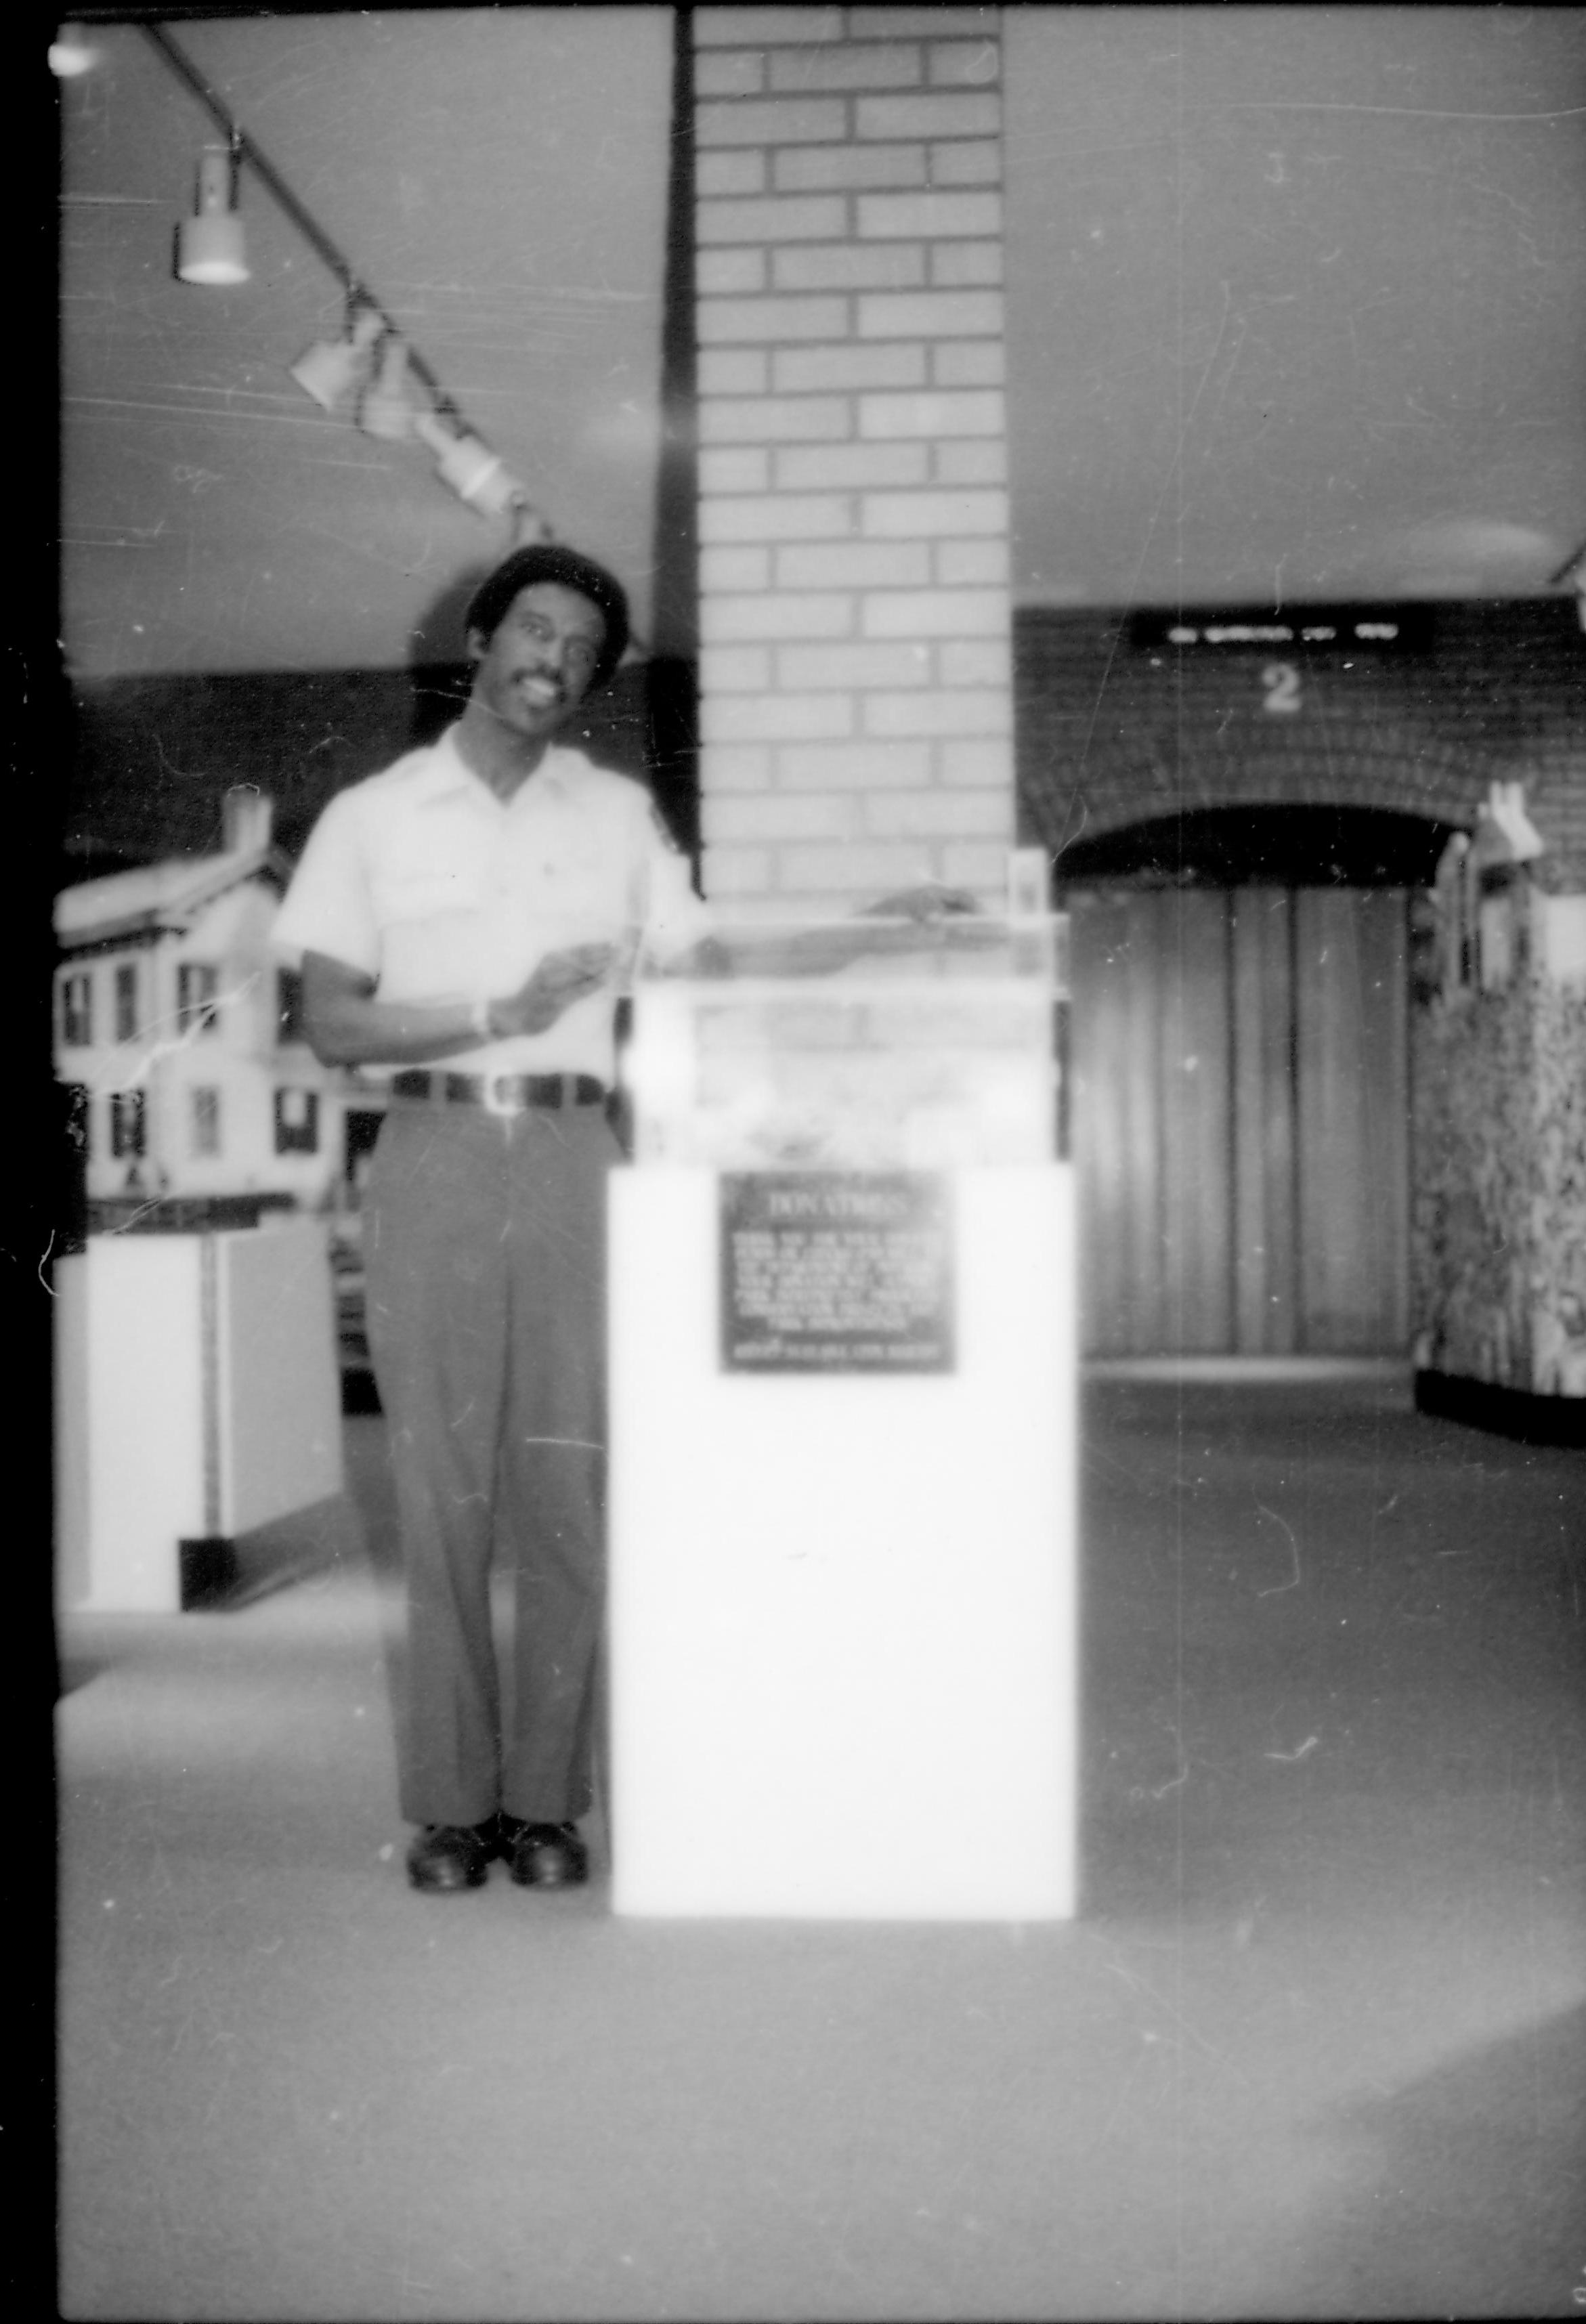 NA File Folder: 1989 - Lincoln Home - Handicap - 114 Visitors Center, Donation Box